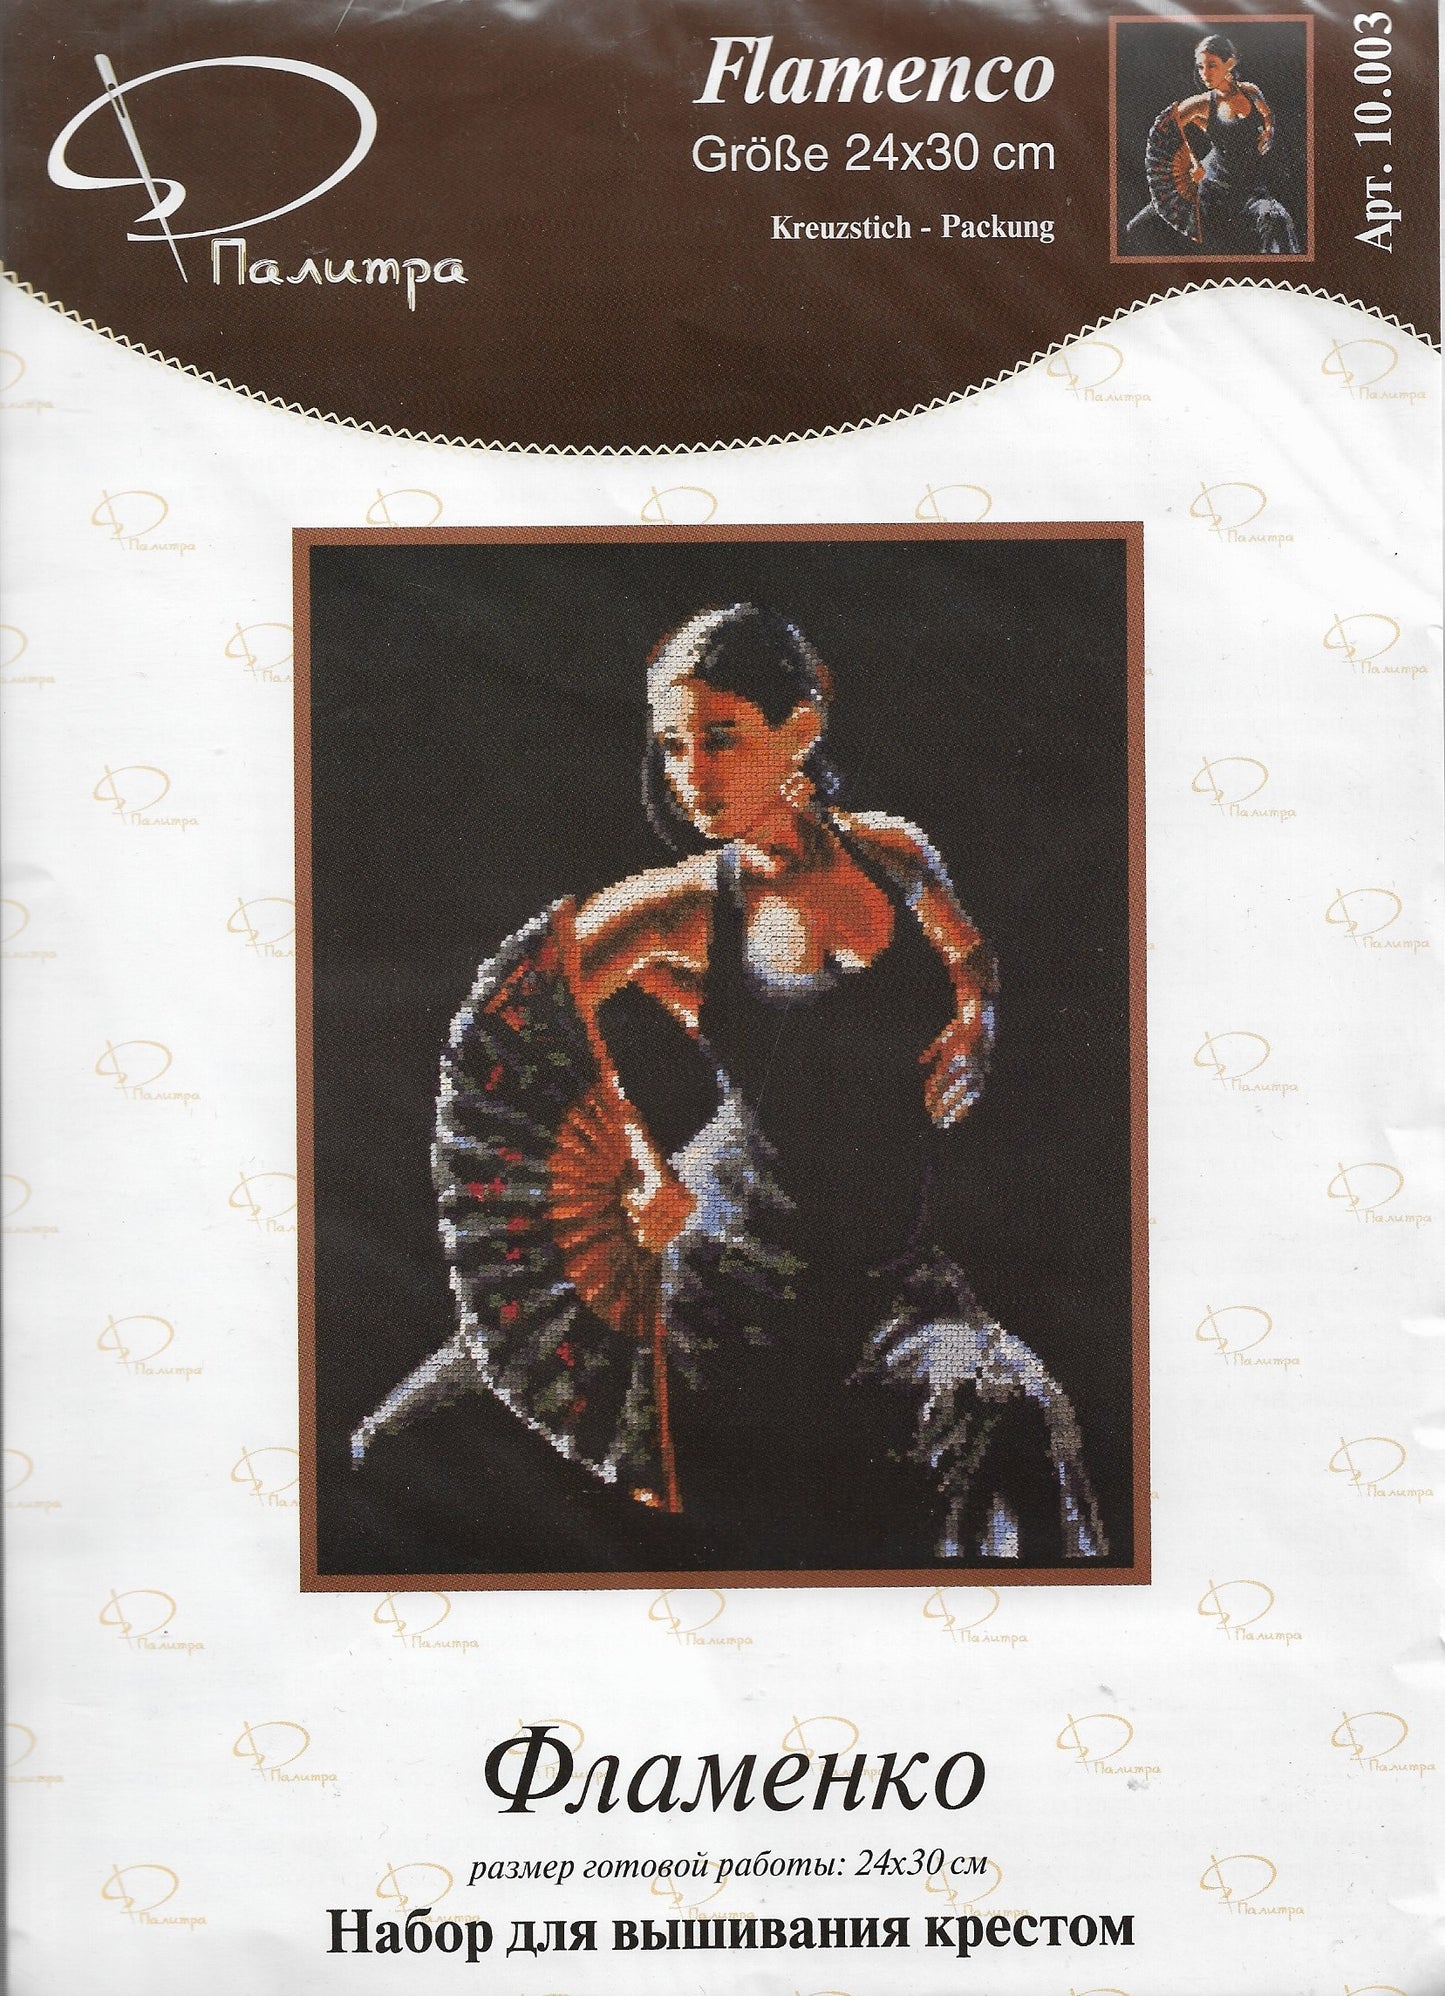 Flamenco cross stitch kit